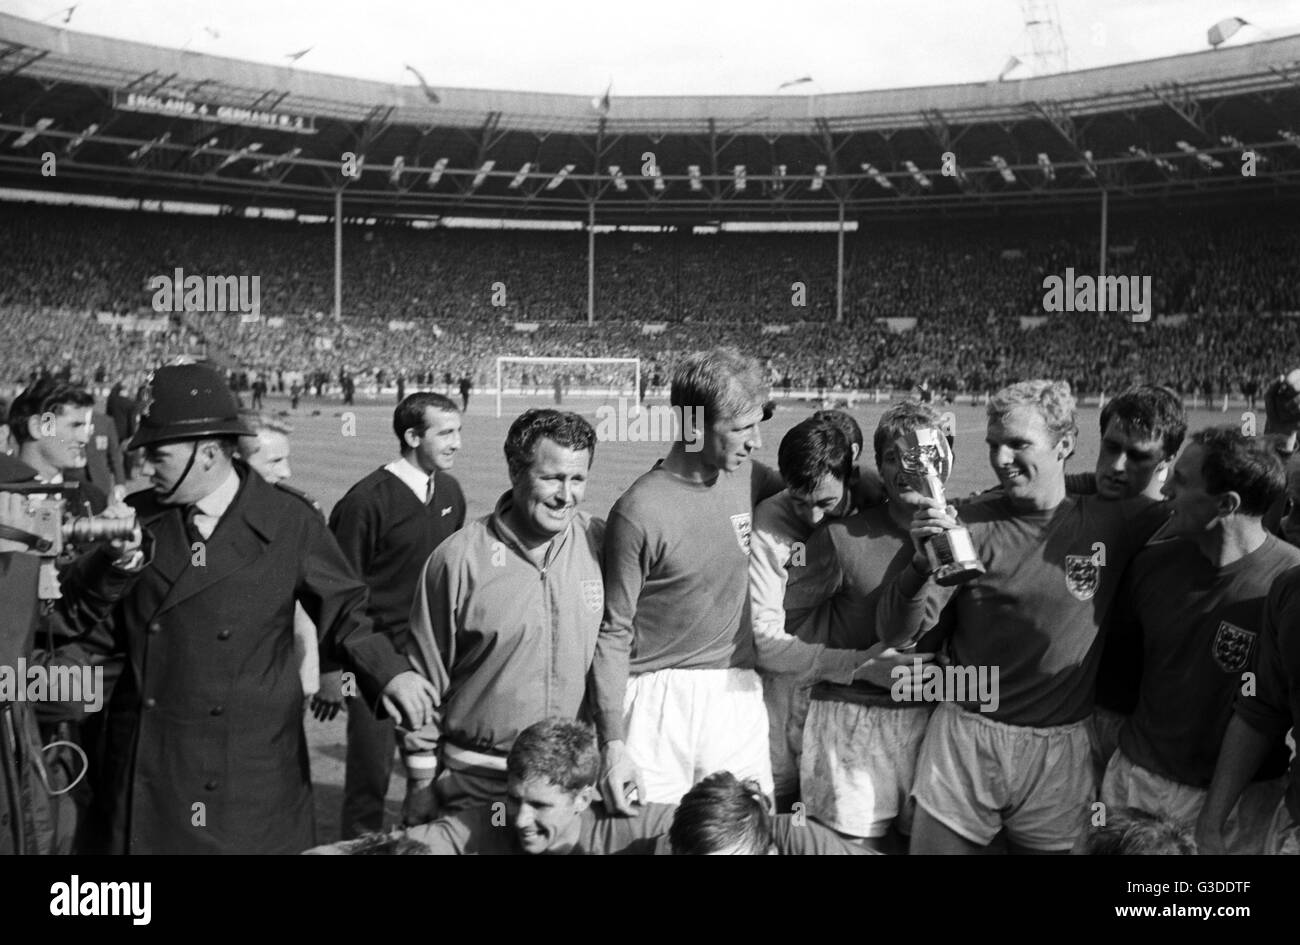 Pour la Coupe du Monde 1966 - Final - Angleterre - l'Allemagne de l'Ouest 4-2 - équipe anglaise célèbre après le match. Dans le monde d'utilisation | Banque D'Images